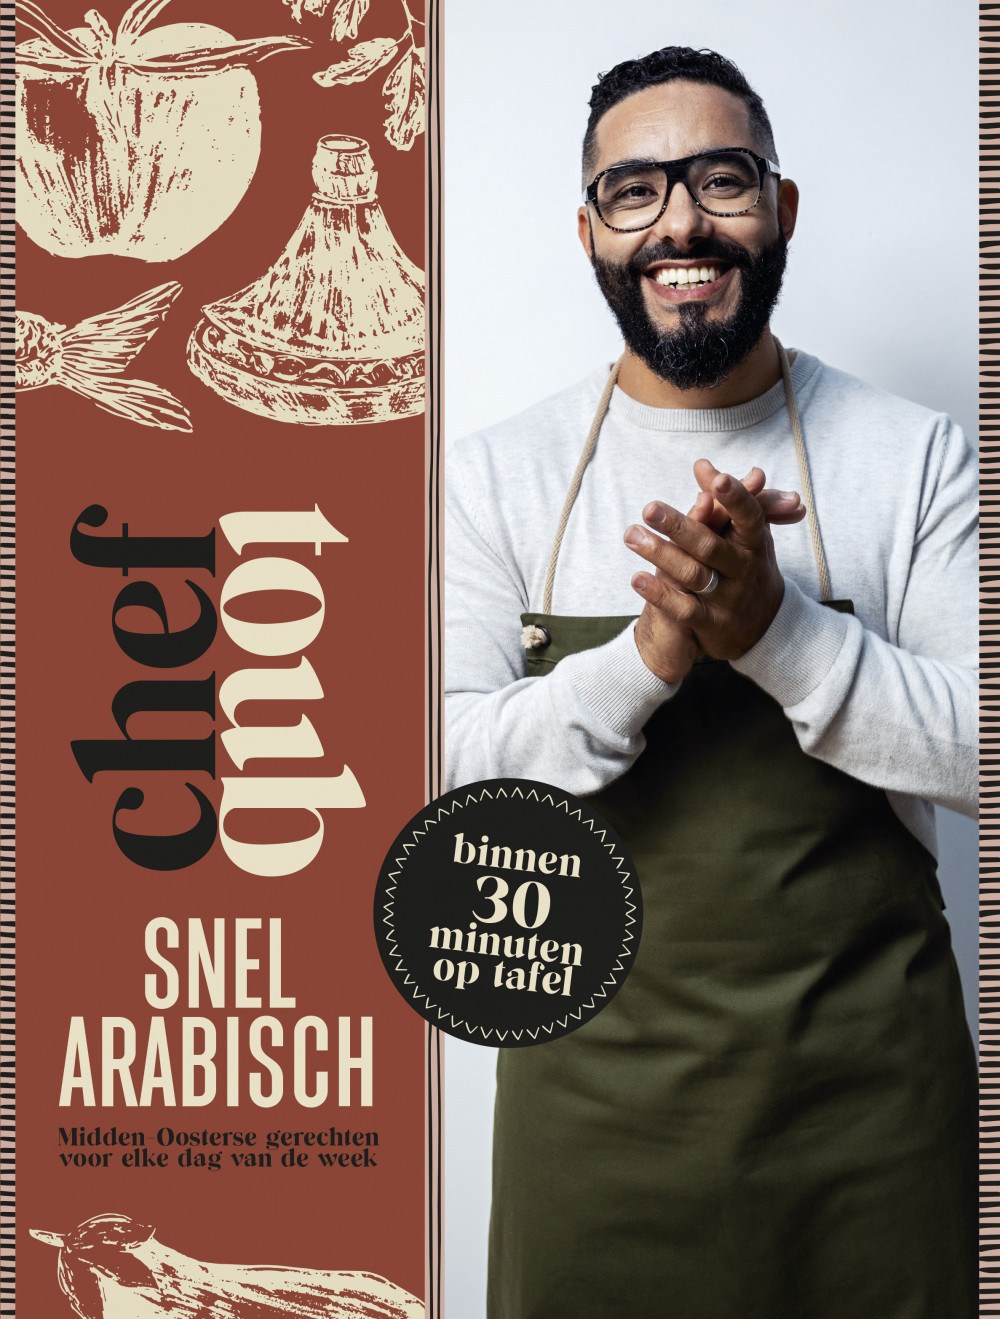 Chef Toub: Snel Arabisch